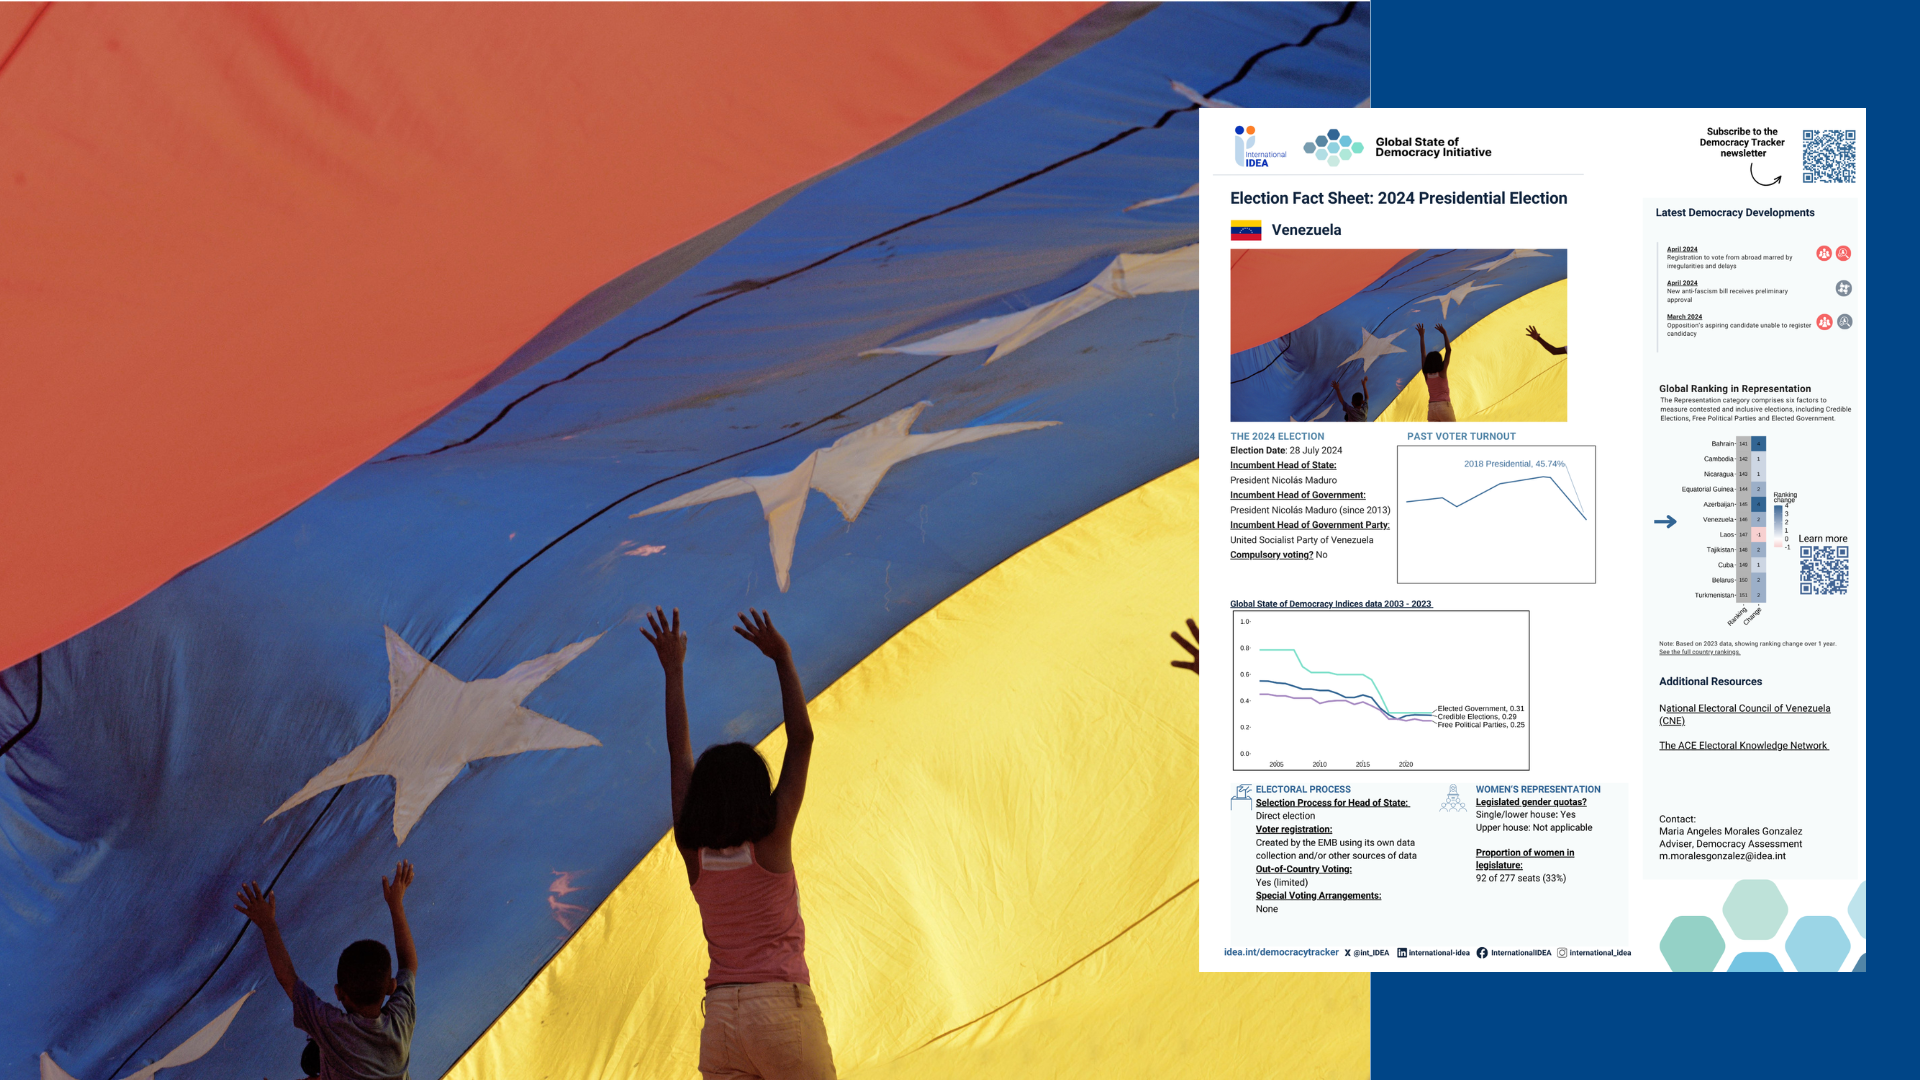 Pre-election factsheet for Venezuela